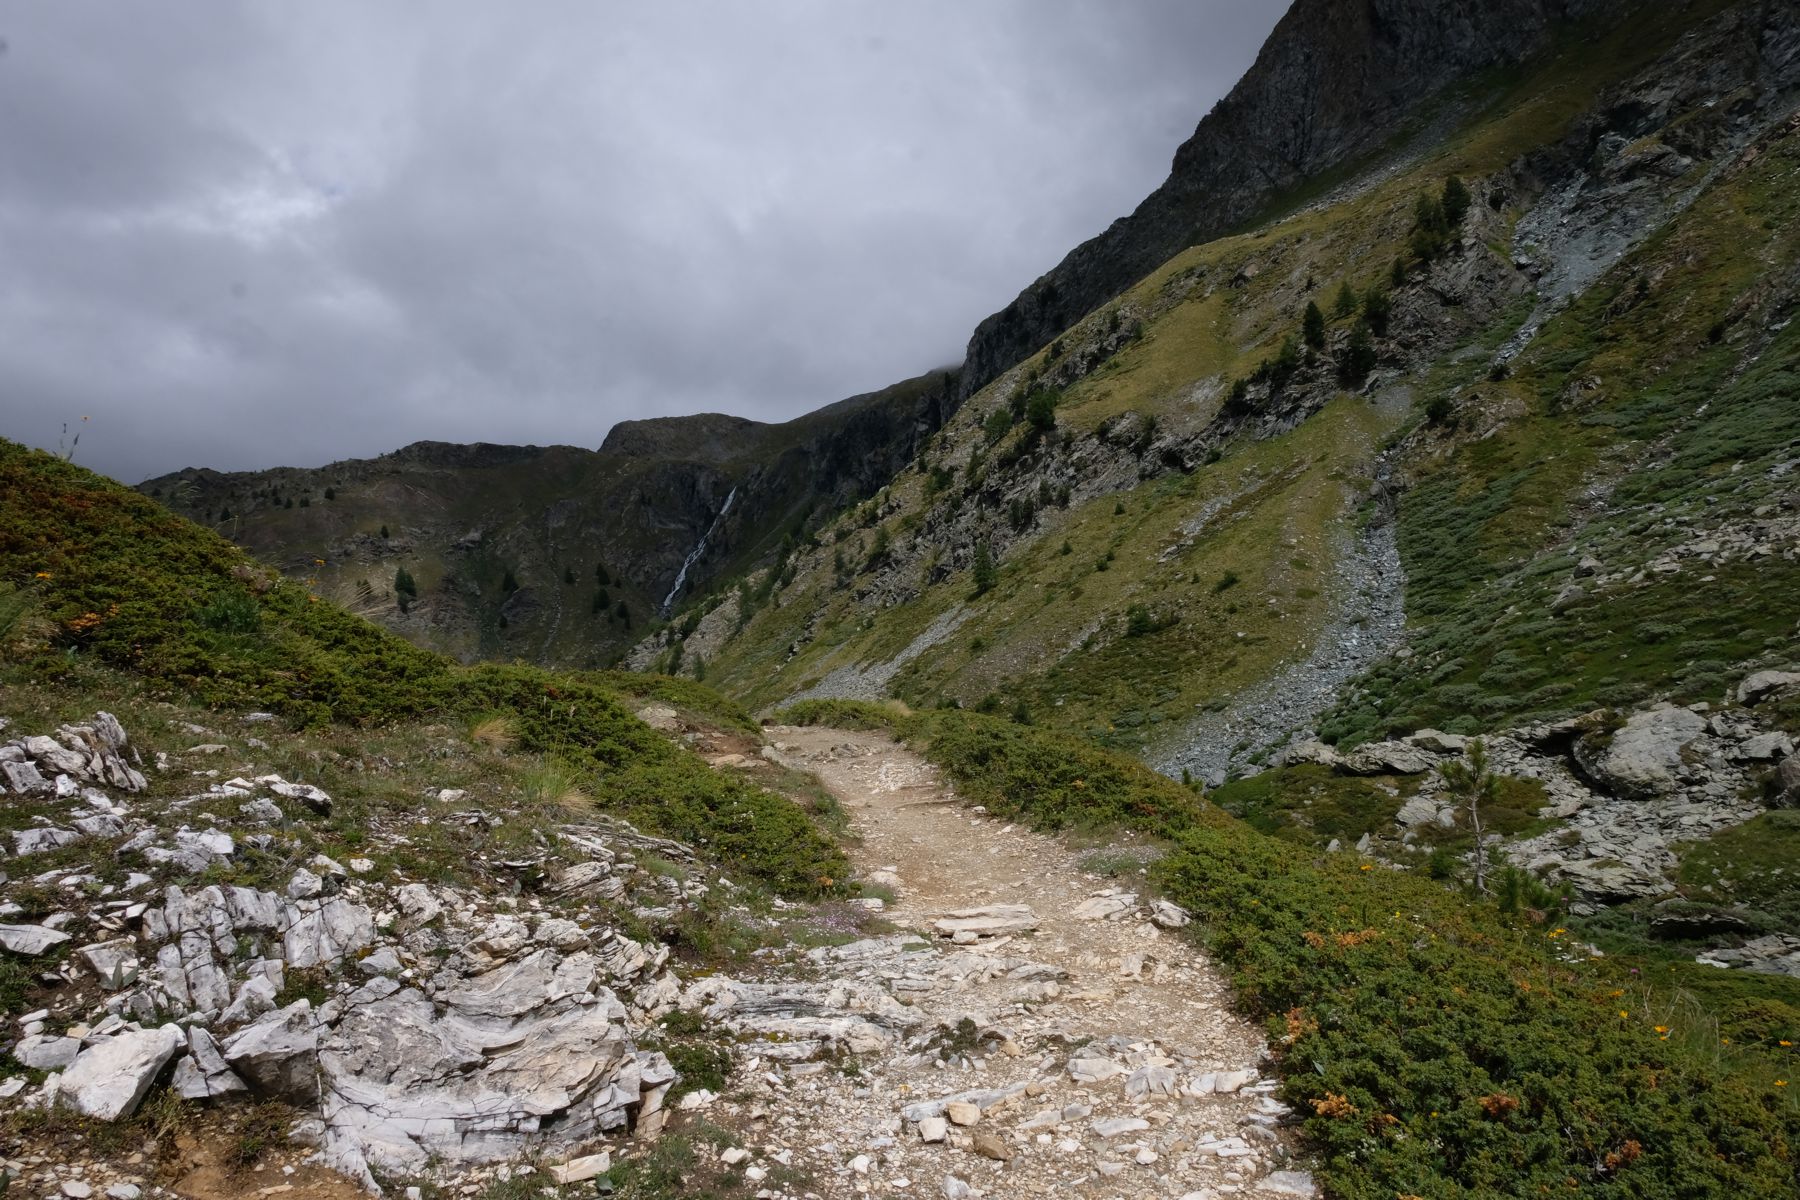 Path through the mountains.